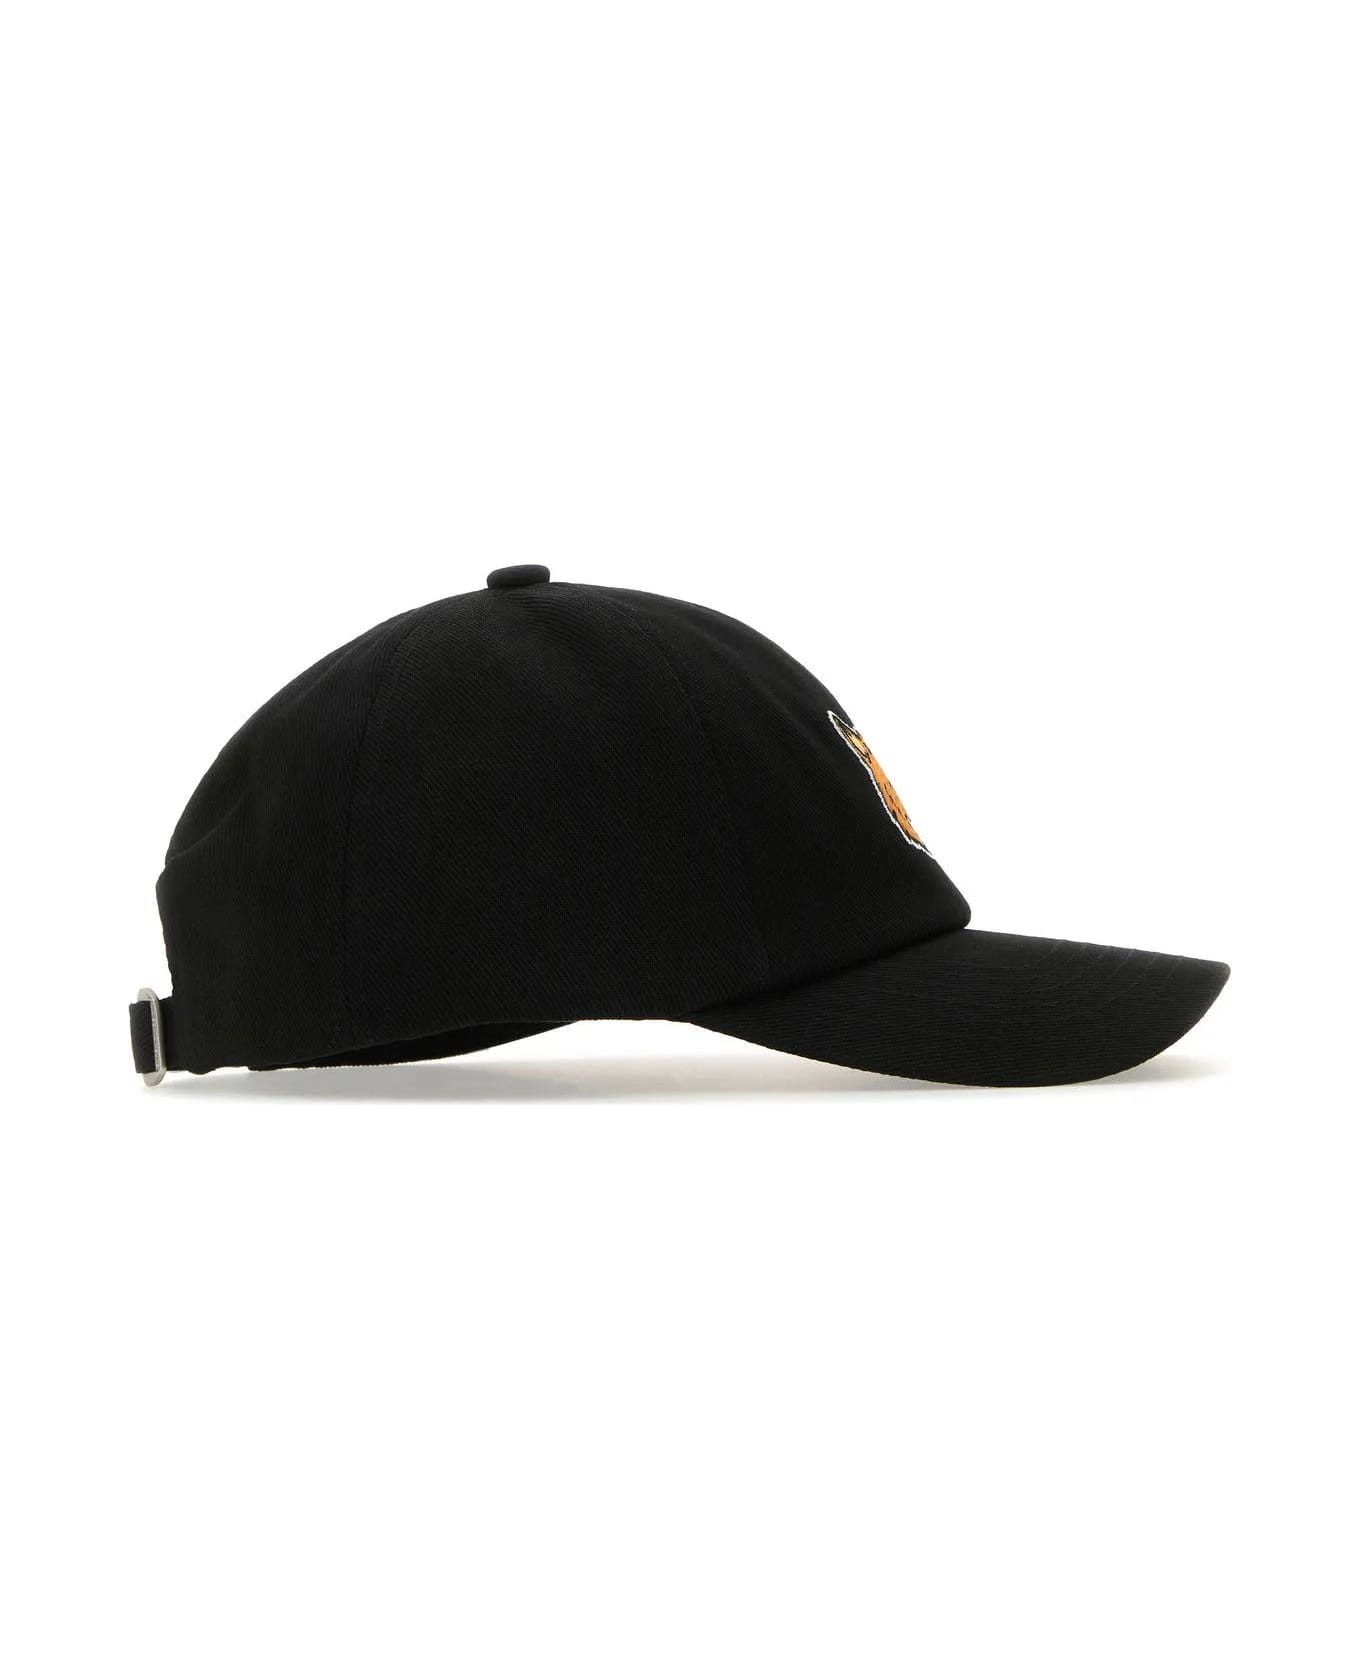 Maison Kitsuné Black Cotton Baseball Cap - Nero